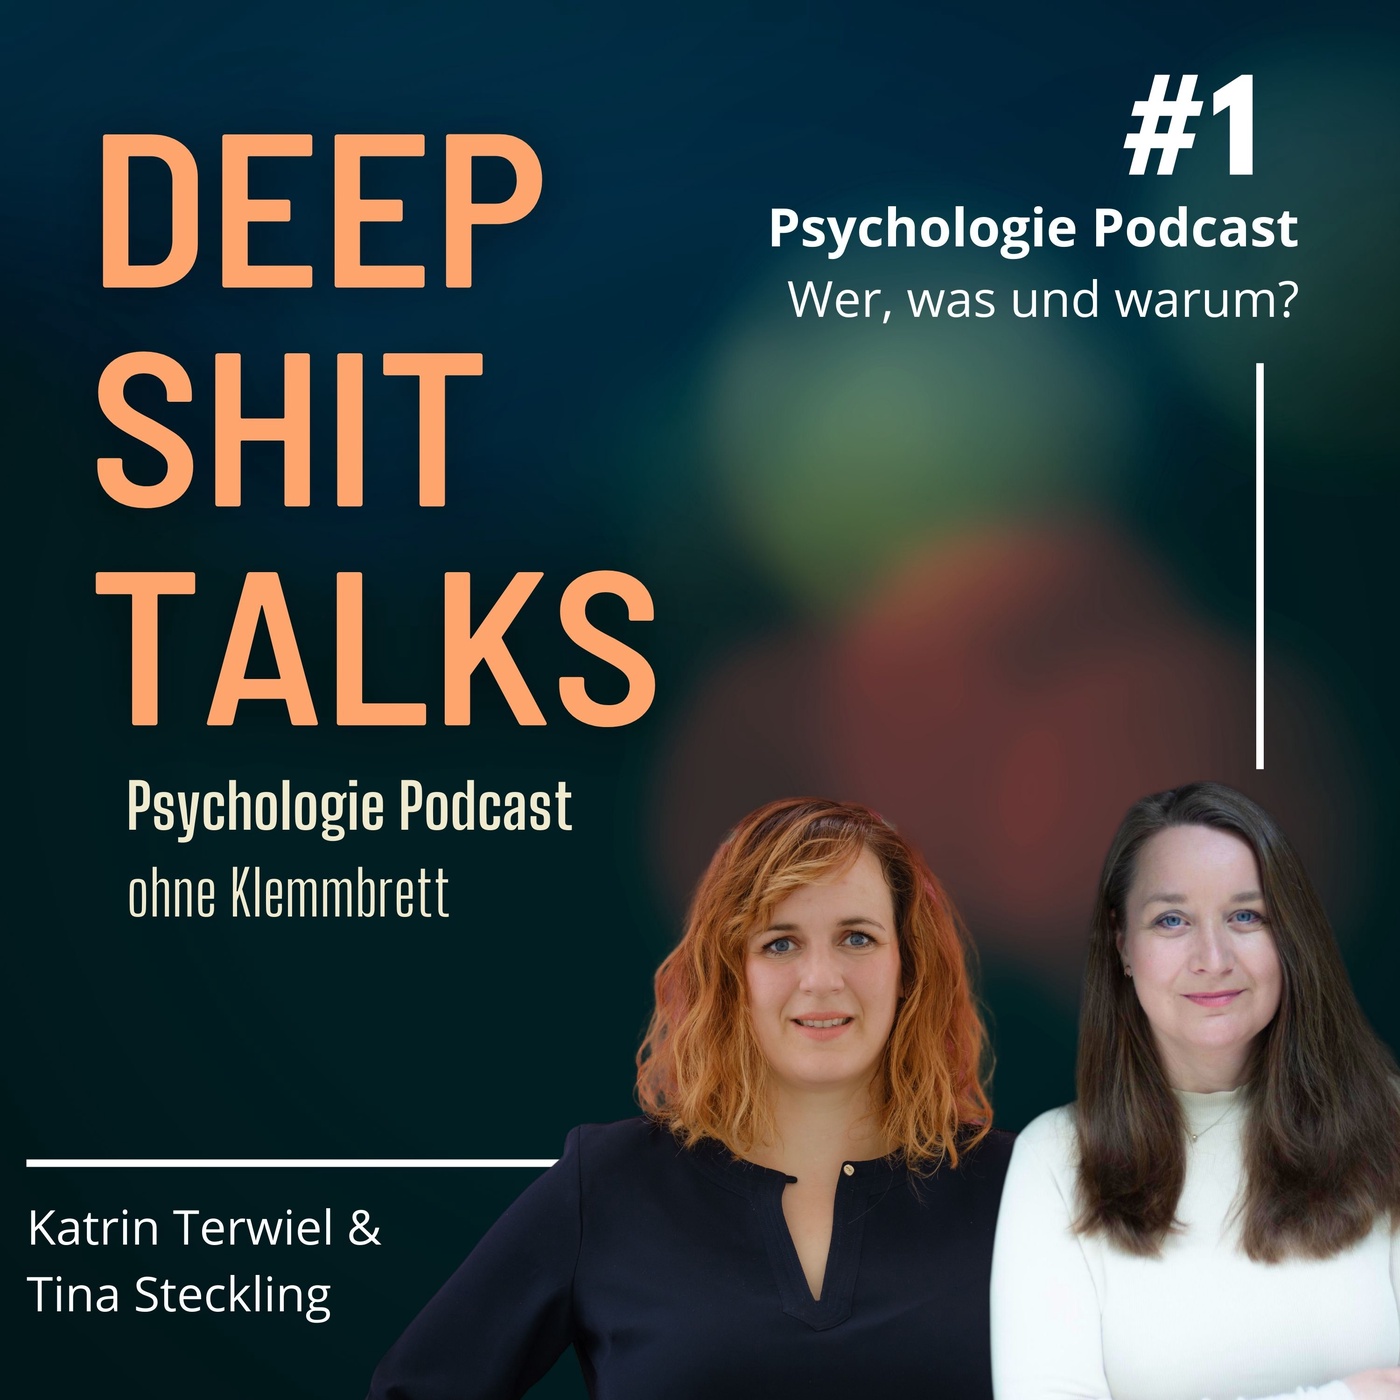 [1] Psychologie Podcast - Wer, was und warum?